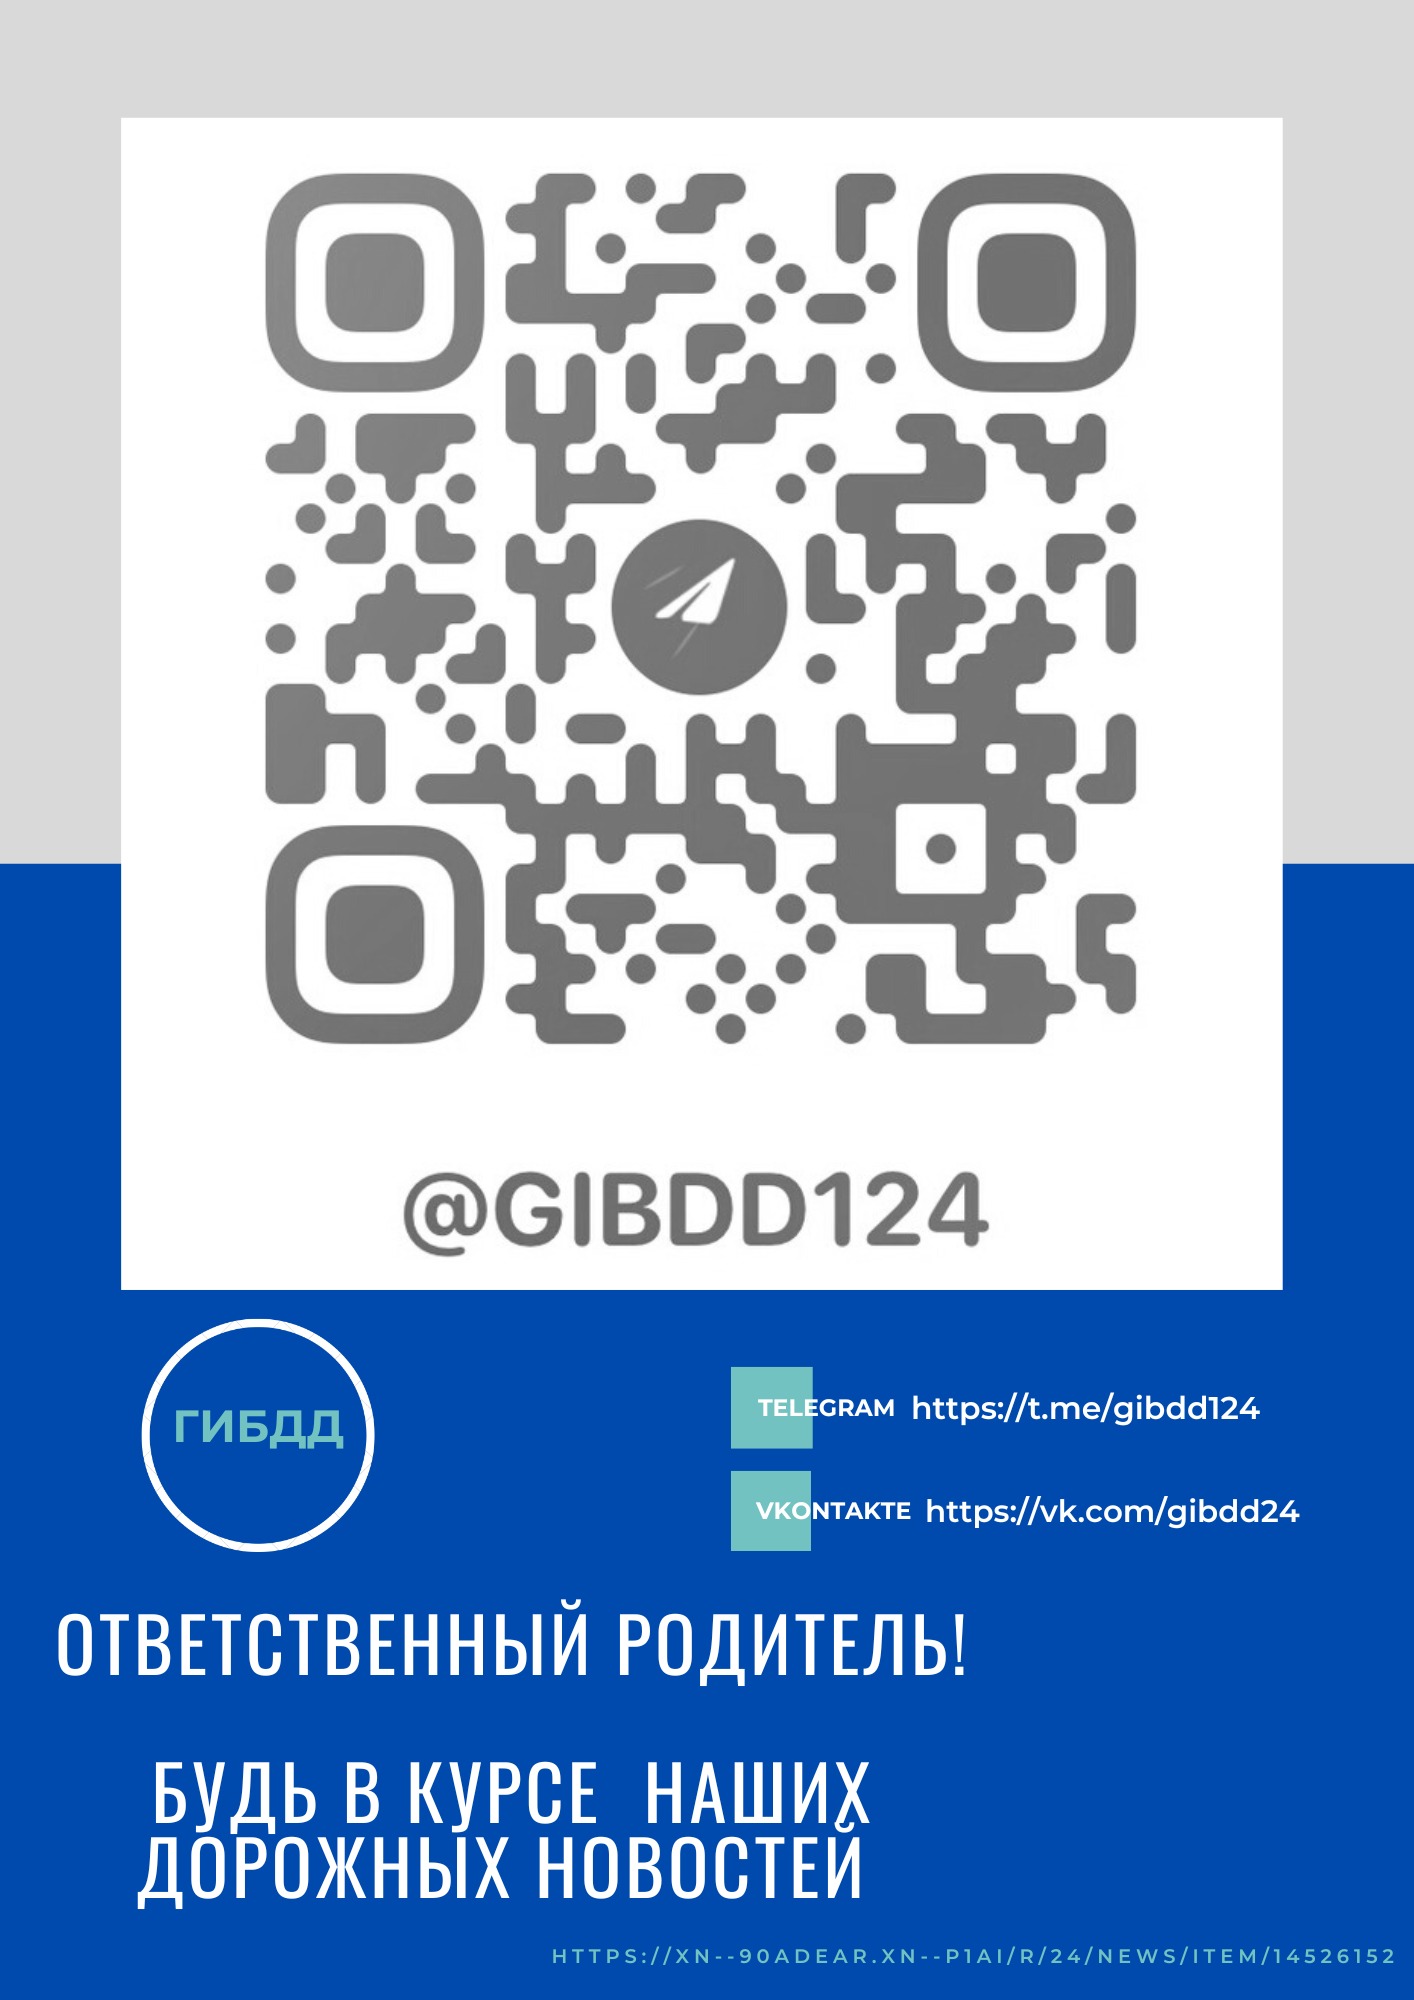 Подпишись на официальный телеграм-канал Госавтоинспекции «ГИБДД124».